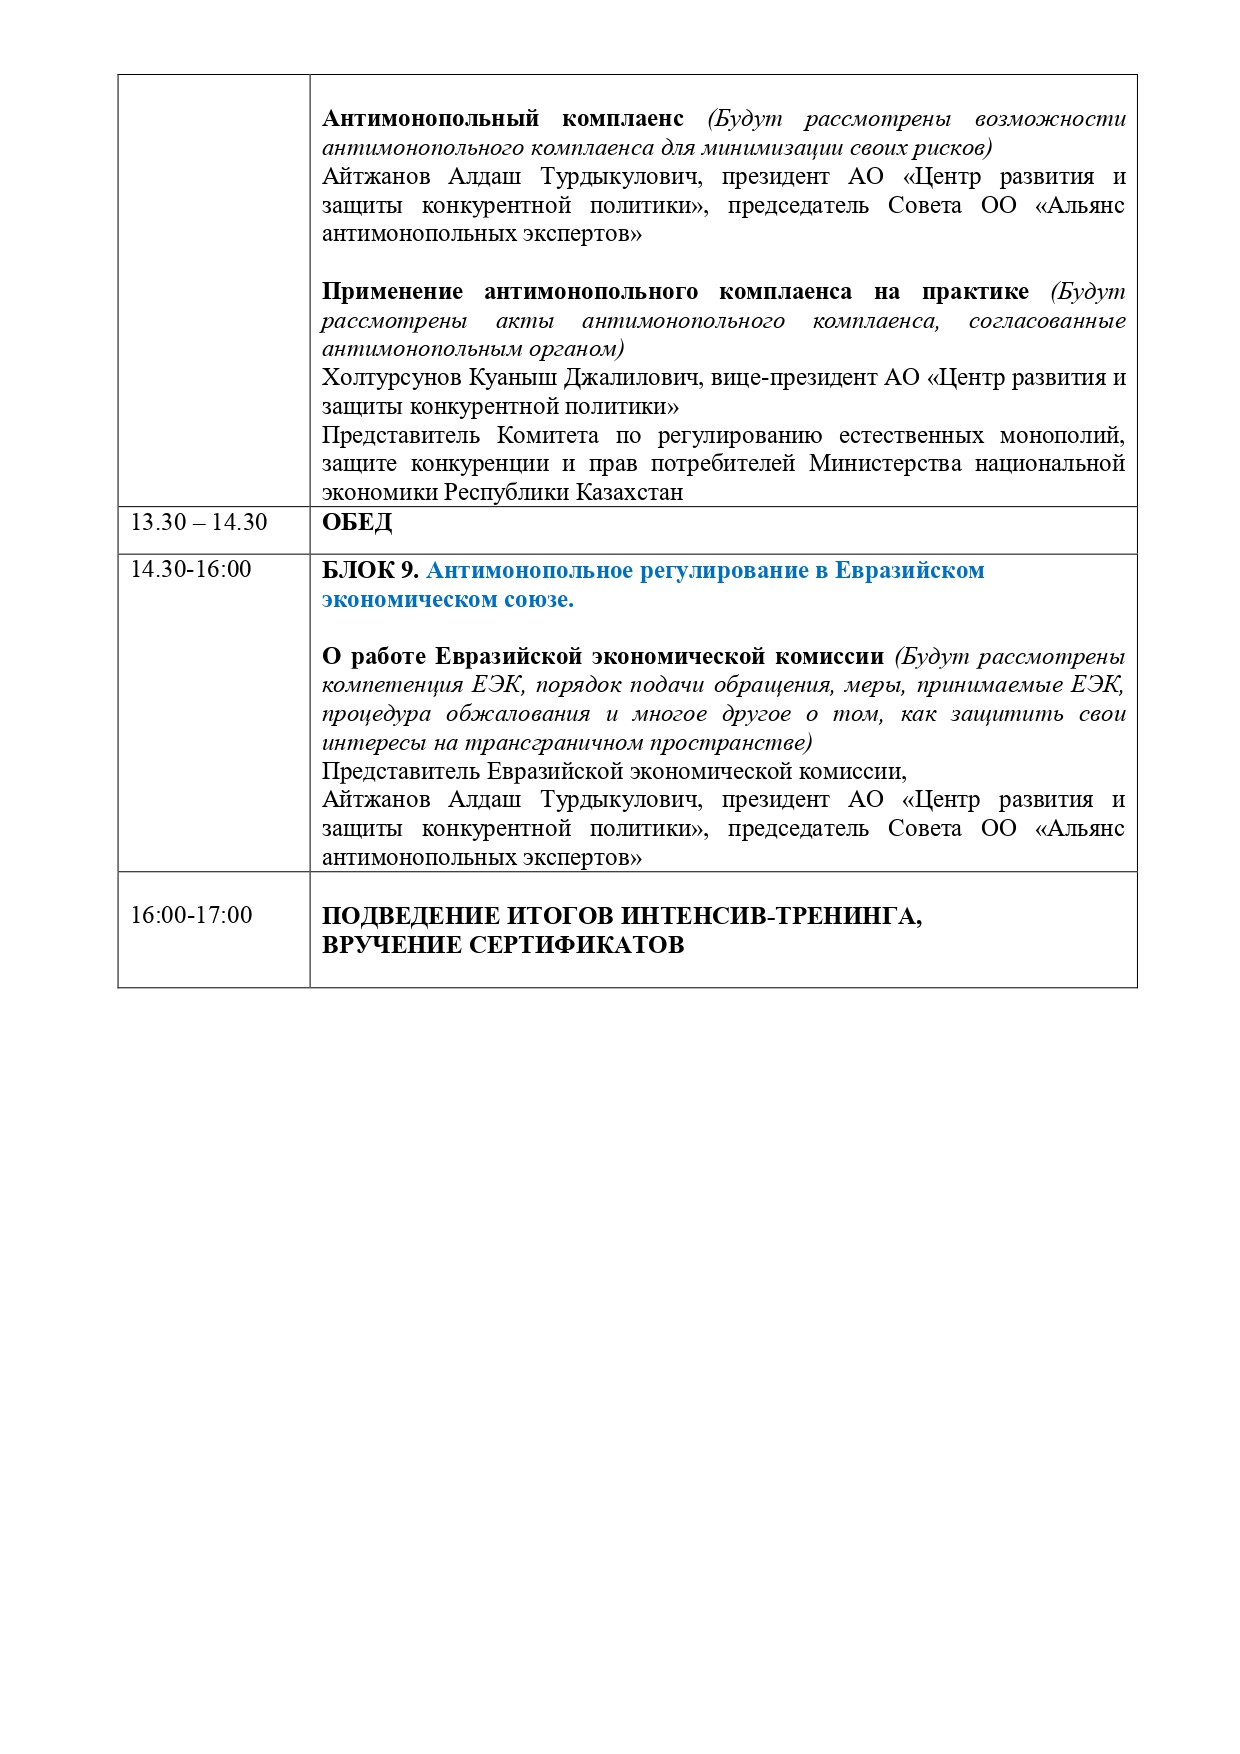 ПРОГРАММА  интенсив-тренинг повышения квалификации по вопросам антимонопольного законодательства Республики Казахстан и Евразийского экономического союза 